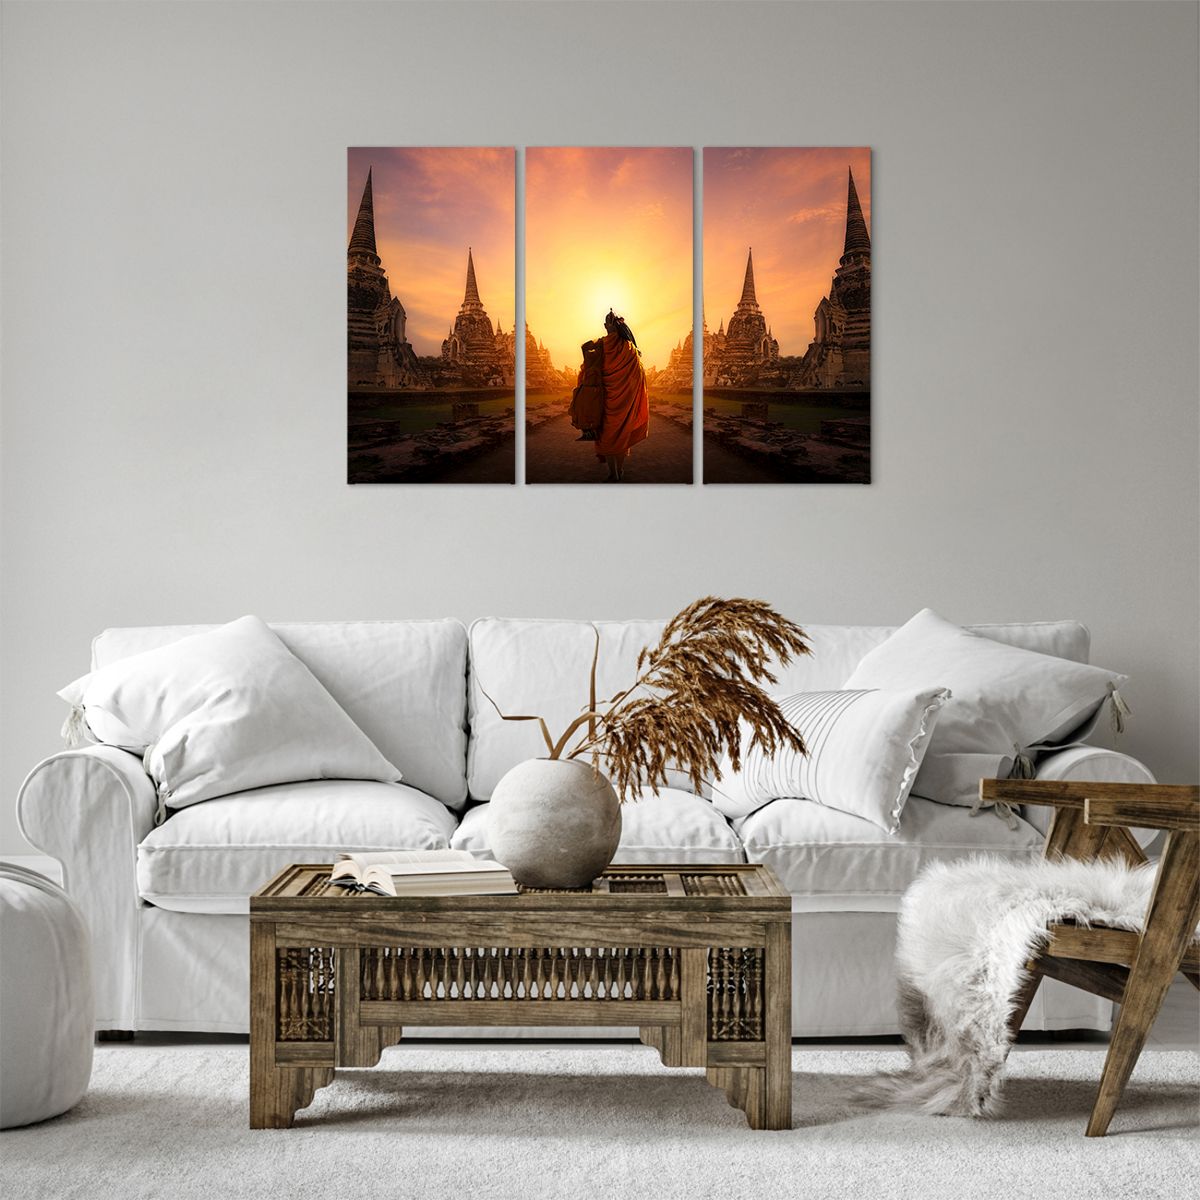 Impression sur toile Thaïlande, Impression sur toile Bouddhisme, Impression sur toile Temple, Impression sur toile Moine, Impression sur toile Méditation